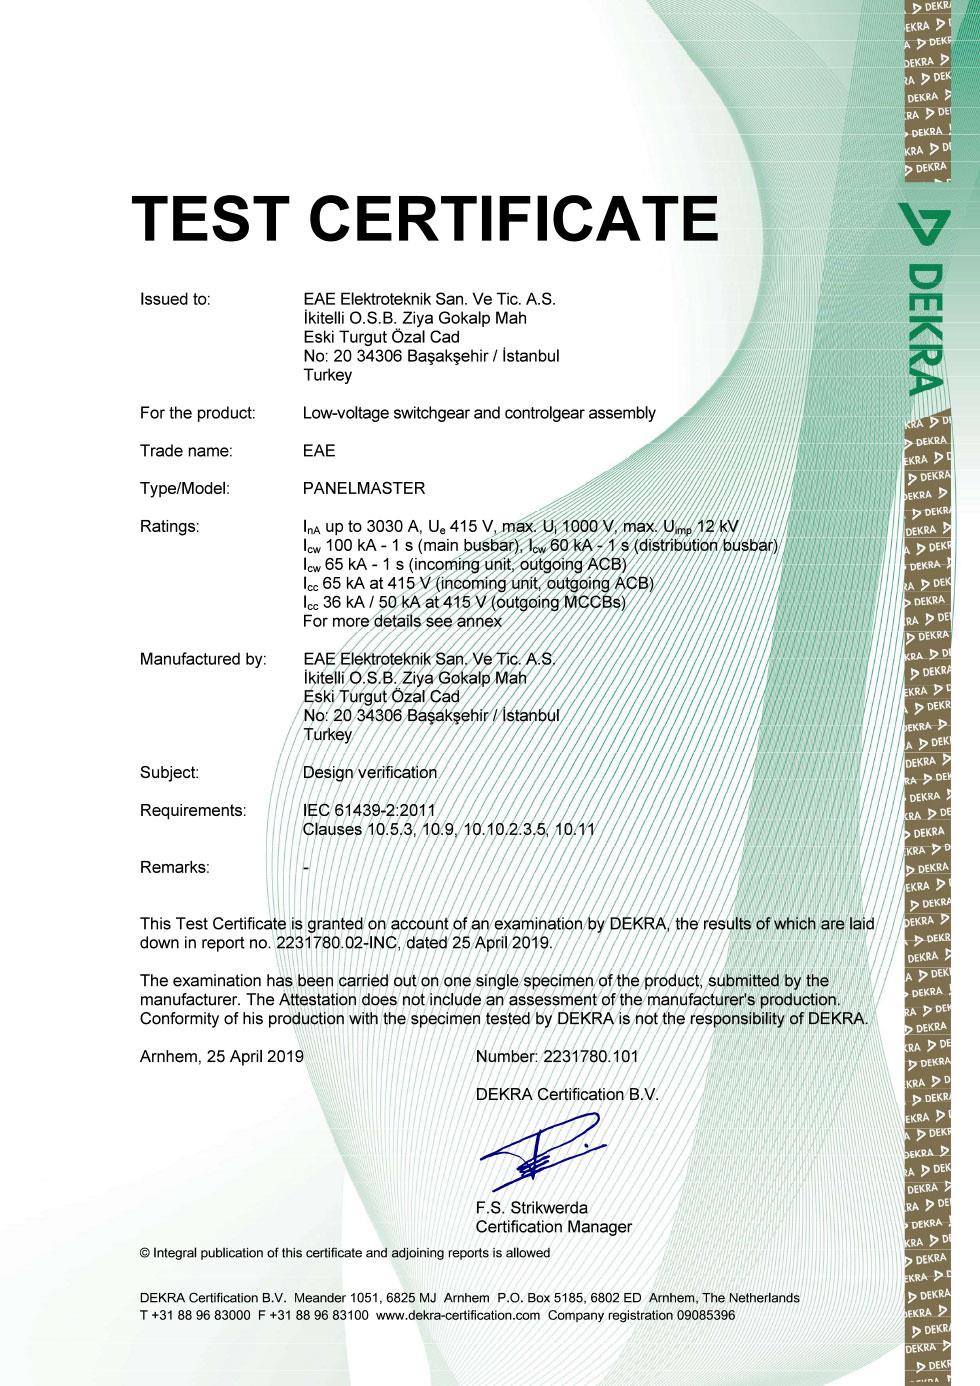 PanelMaster IEC 61439 Type Test Certificate (Schneider - MVS - CVS)